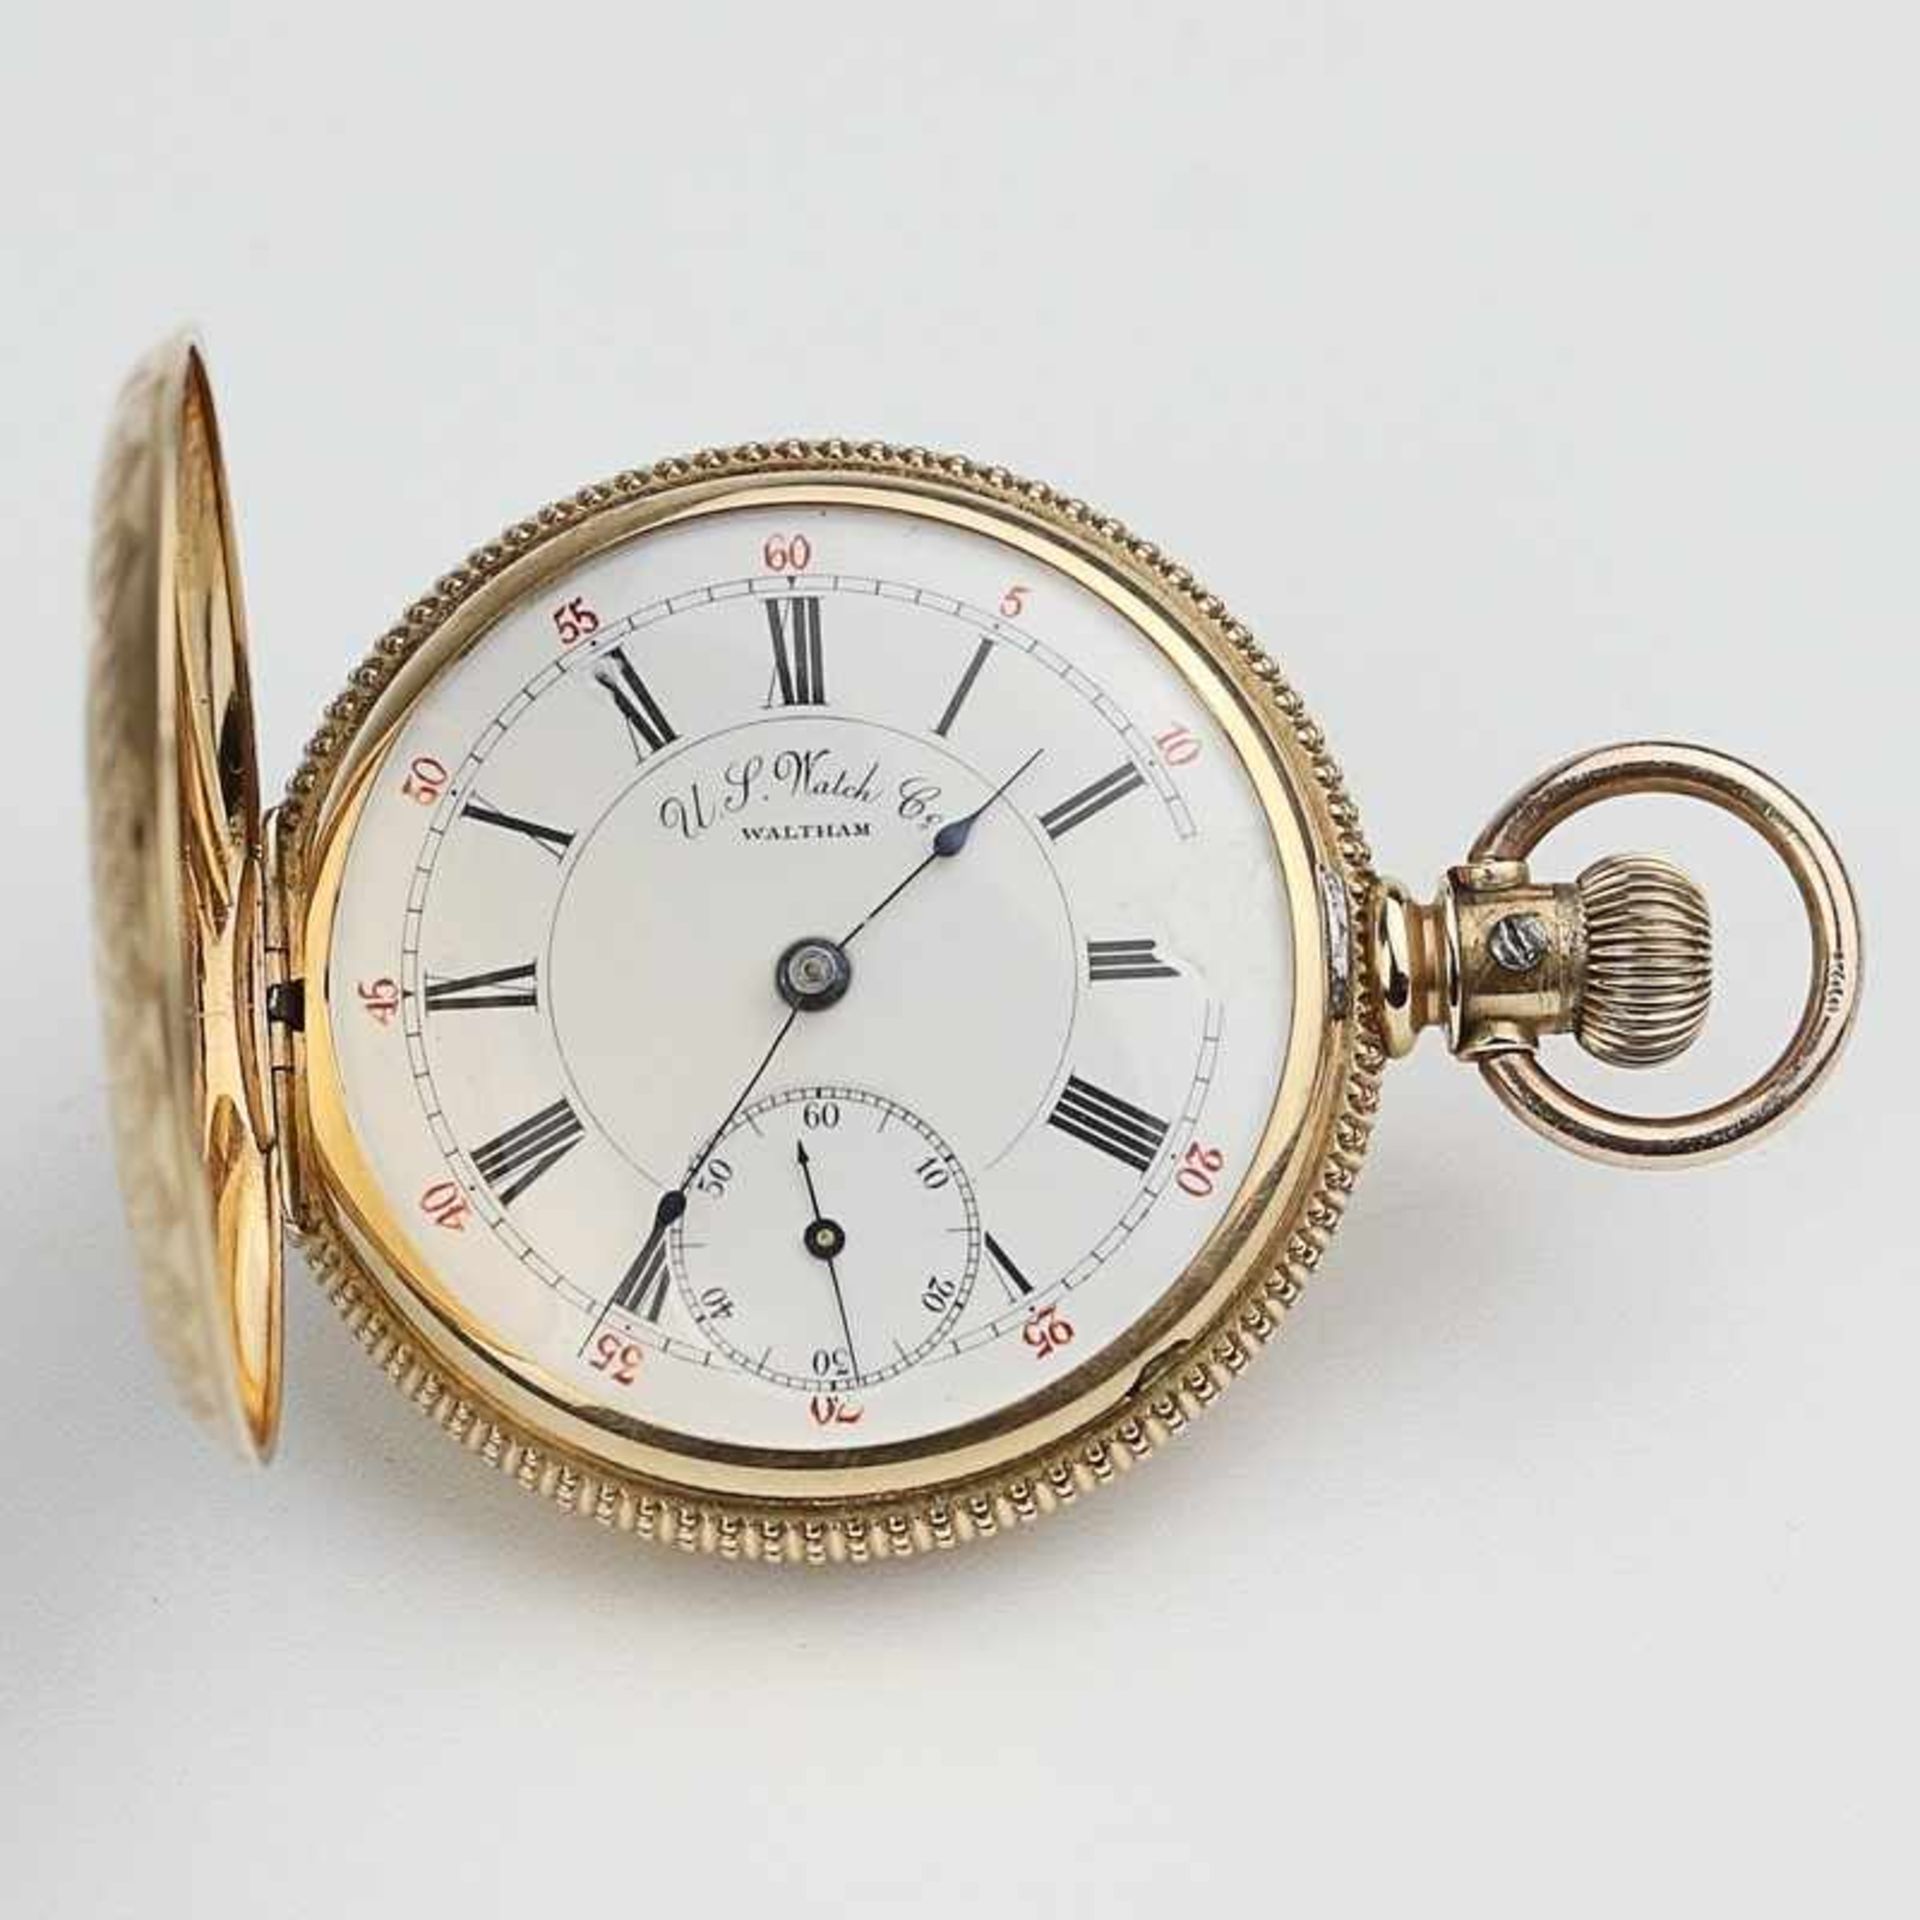 Herrentaschenuhr - Waltham GG 585, gem. "U.S.Watch Co", Savonette, rund, Dca.4cm, weißes